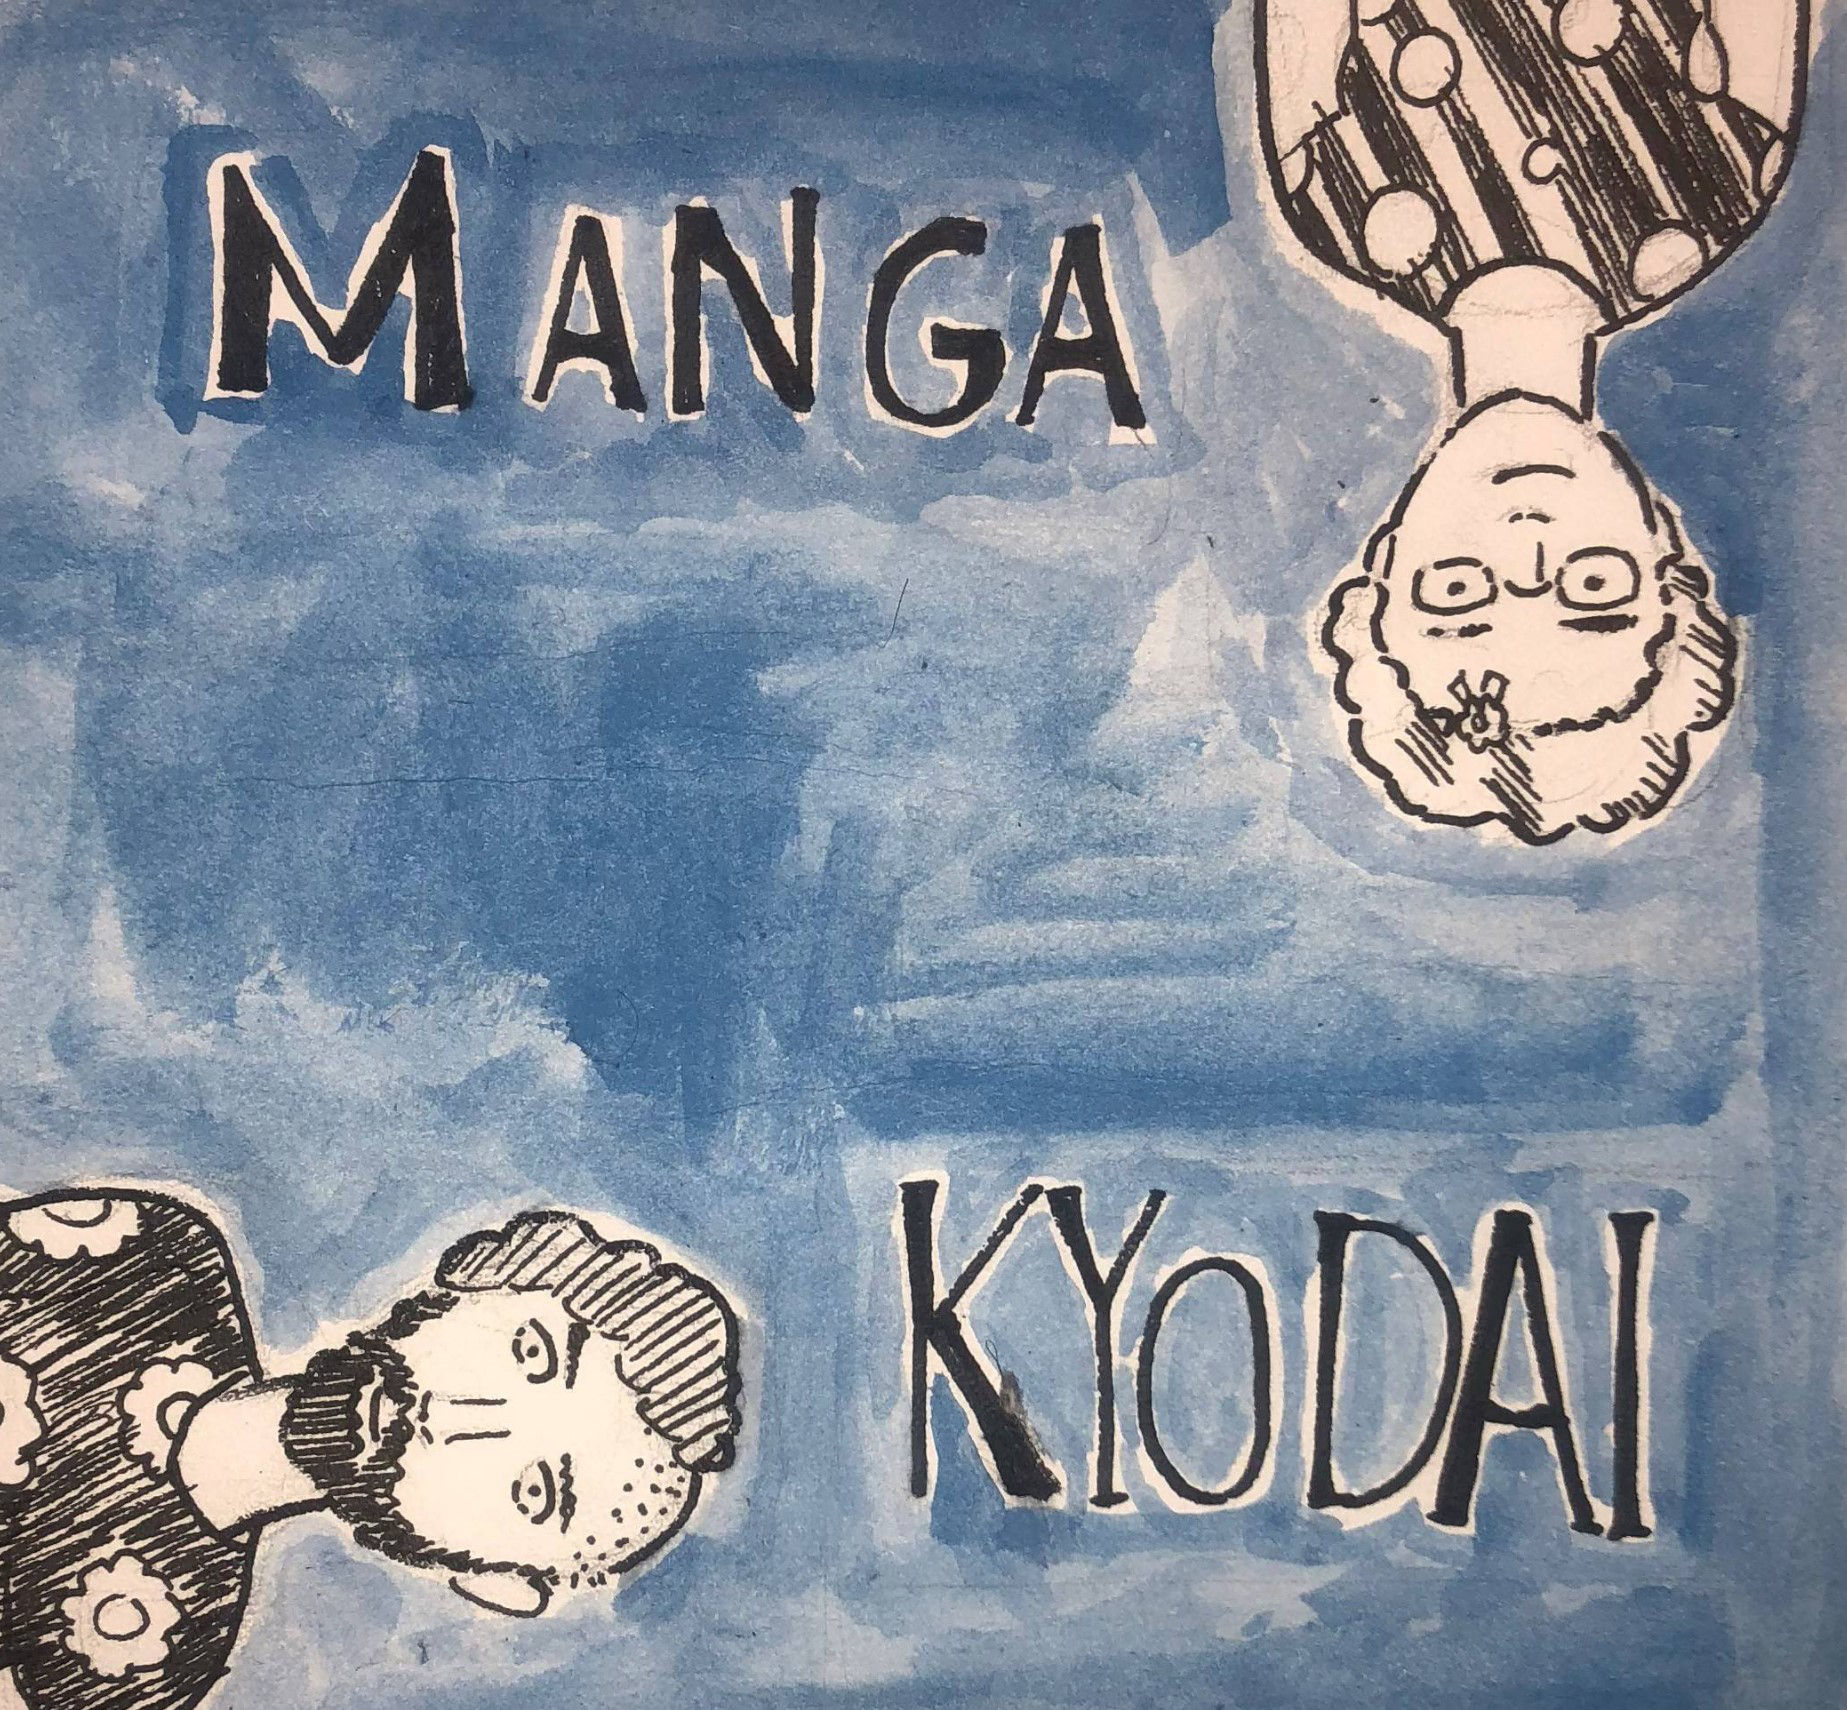 Manga Kyodai